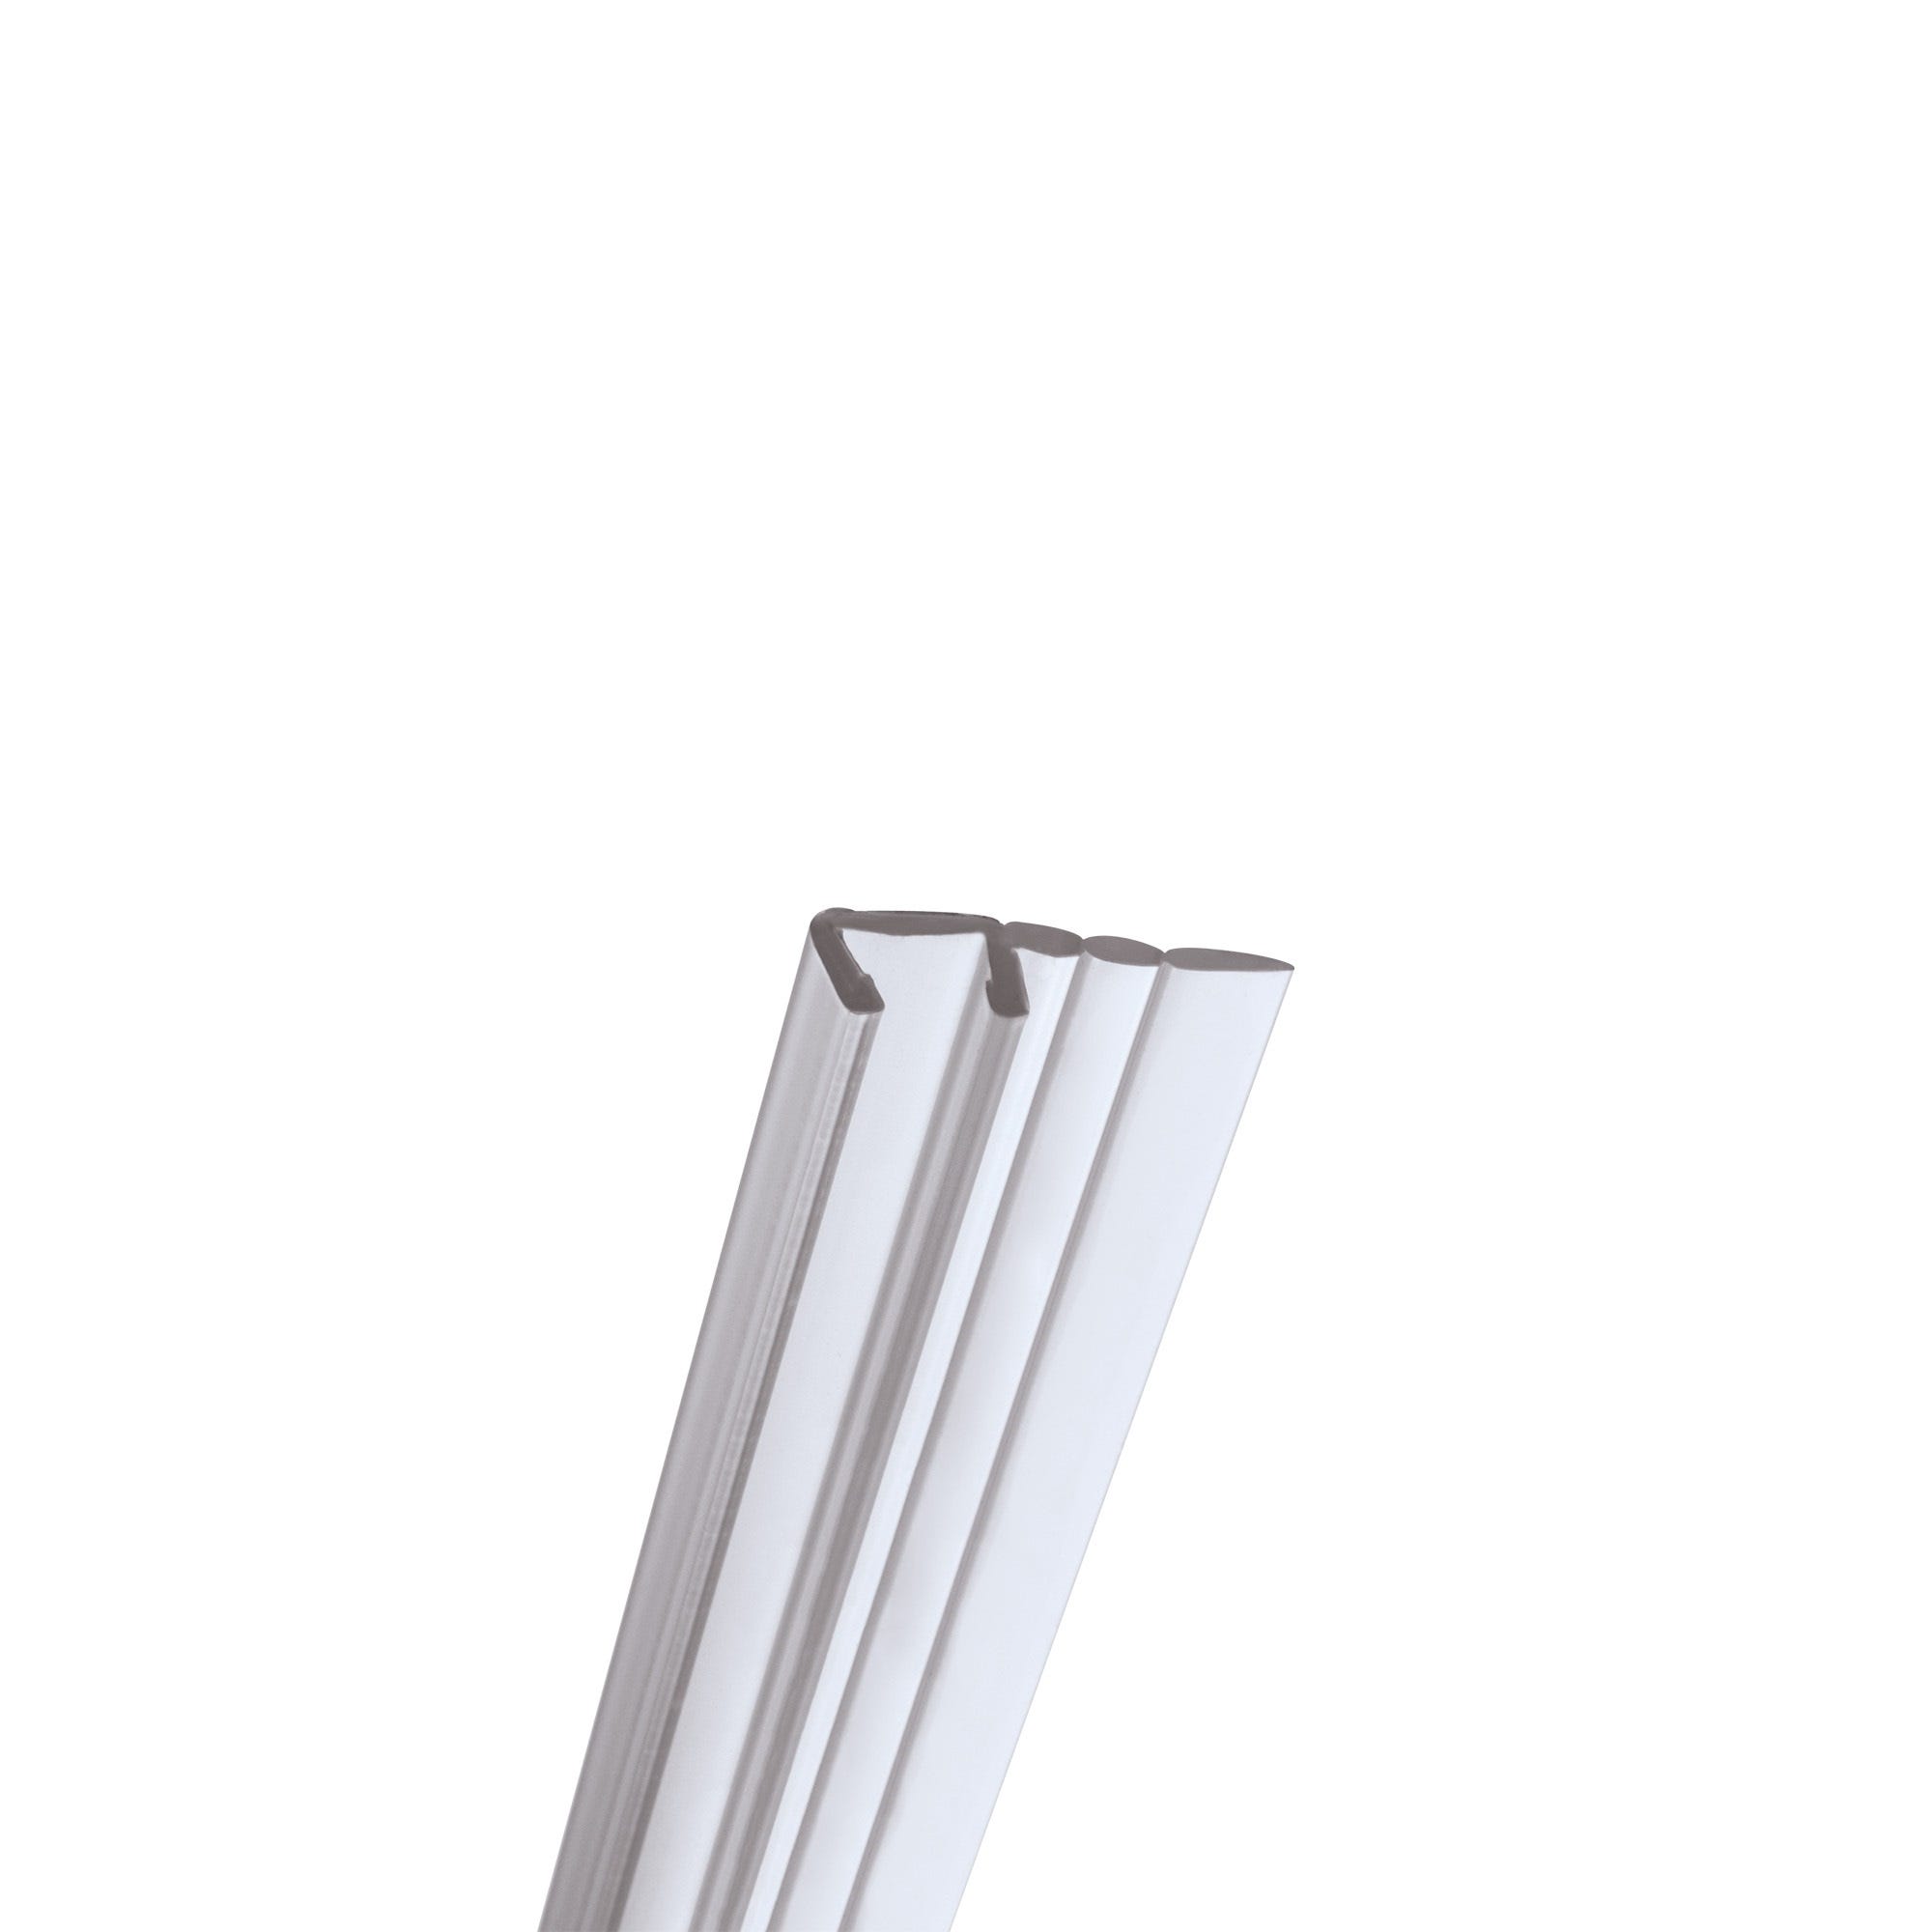 Joint d'étanchéité de douche bas Universel, Schulte, 100 cm recoupable,  pour porte coulissante 8 mm, E100058-8-1